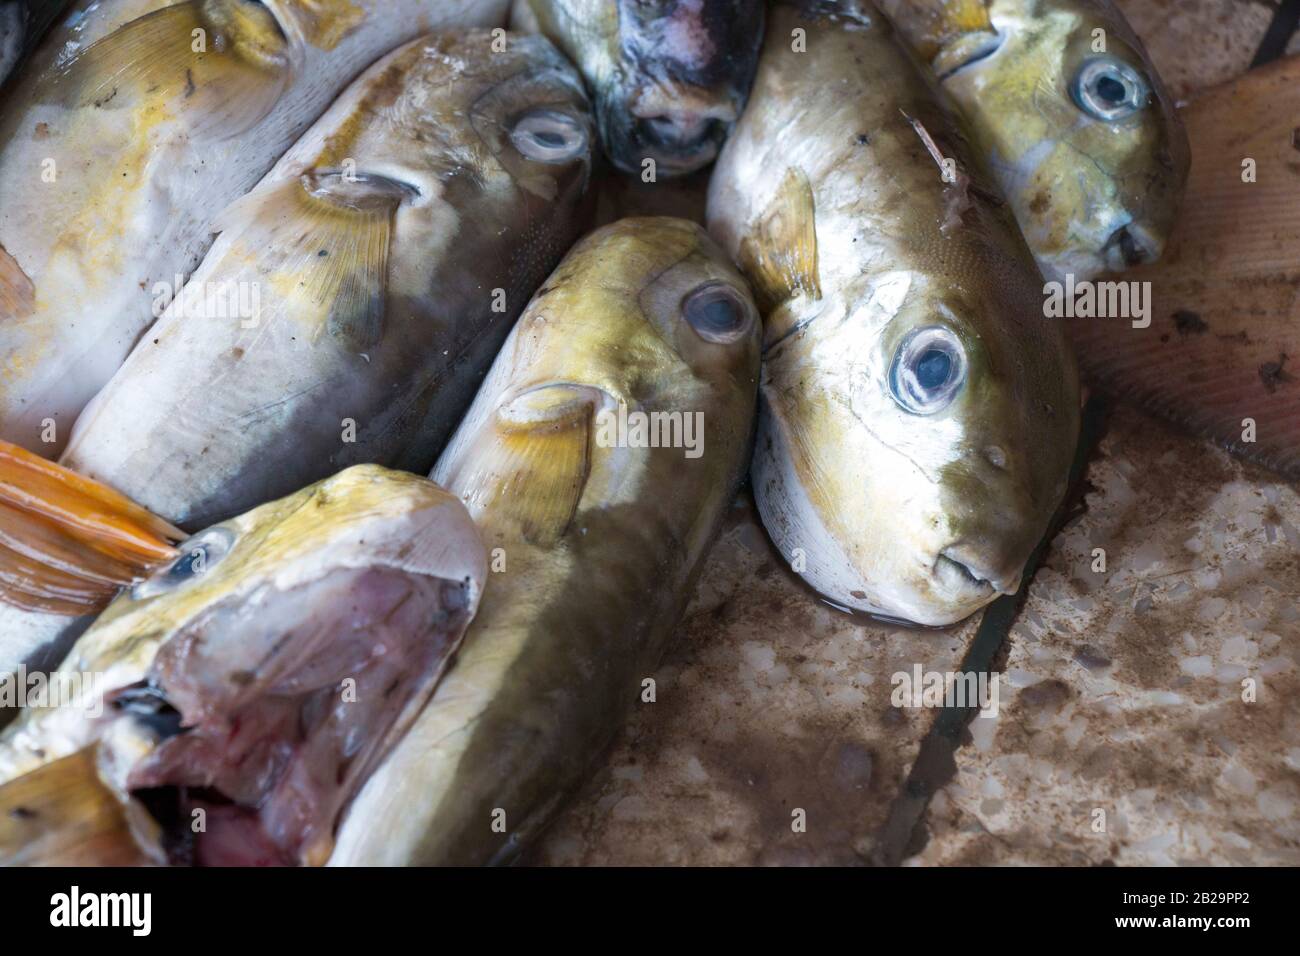 Des poissons plus petits verts pêchent de la mer par des hommes de Fisher dans le bazar de Cox, au Bangladesh. Le poisson vert est une espèce de poissons plus petits que l'on trouve dans le Sud. Banque D'Images